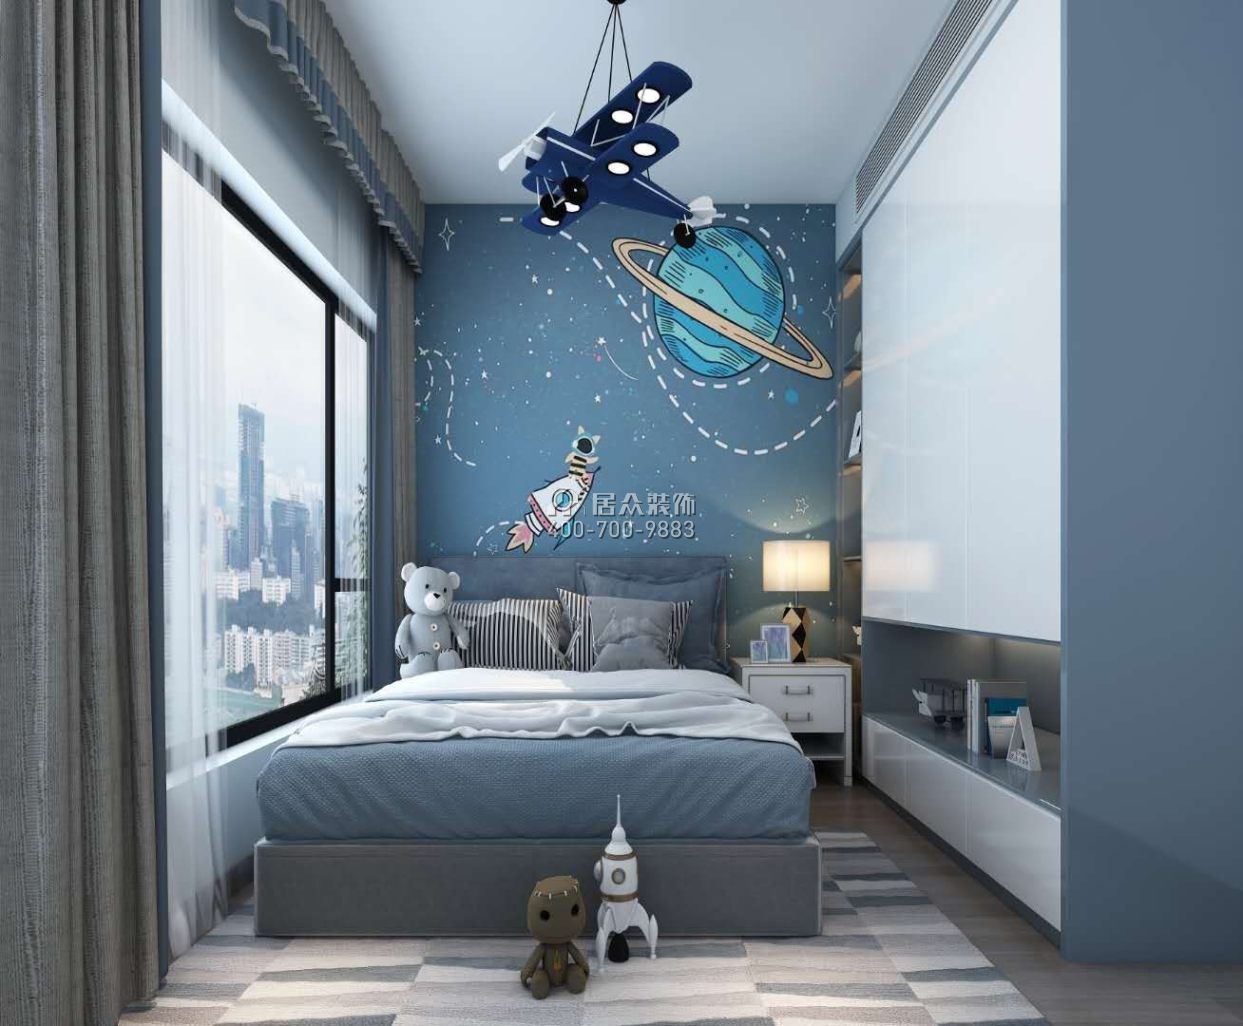 东关乐尚林居108平方米现代简约风格平层户型卧室装修效果图